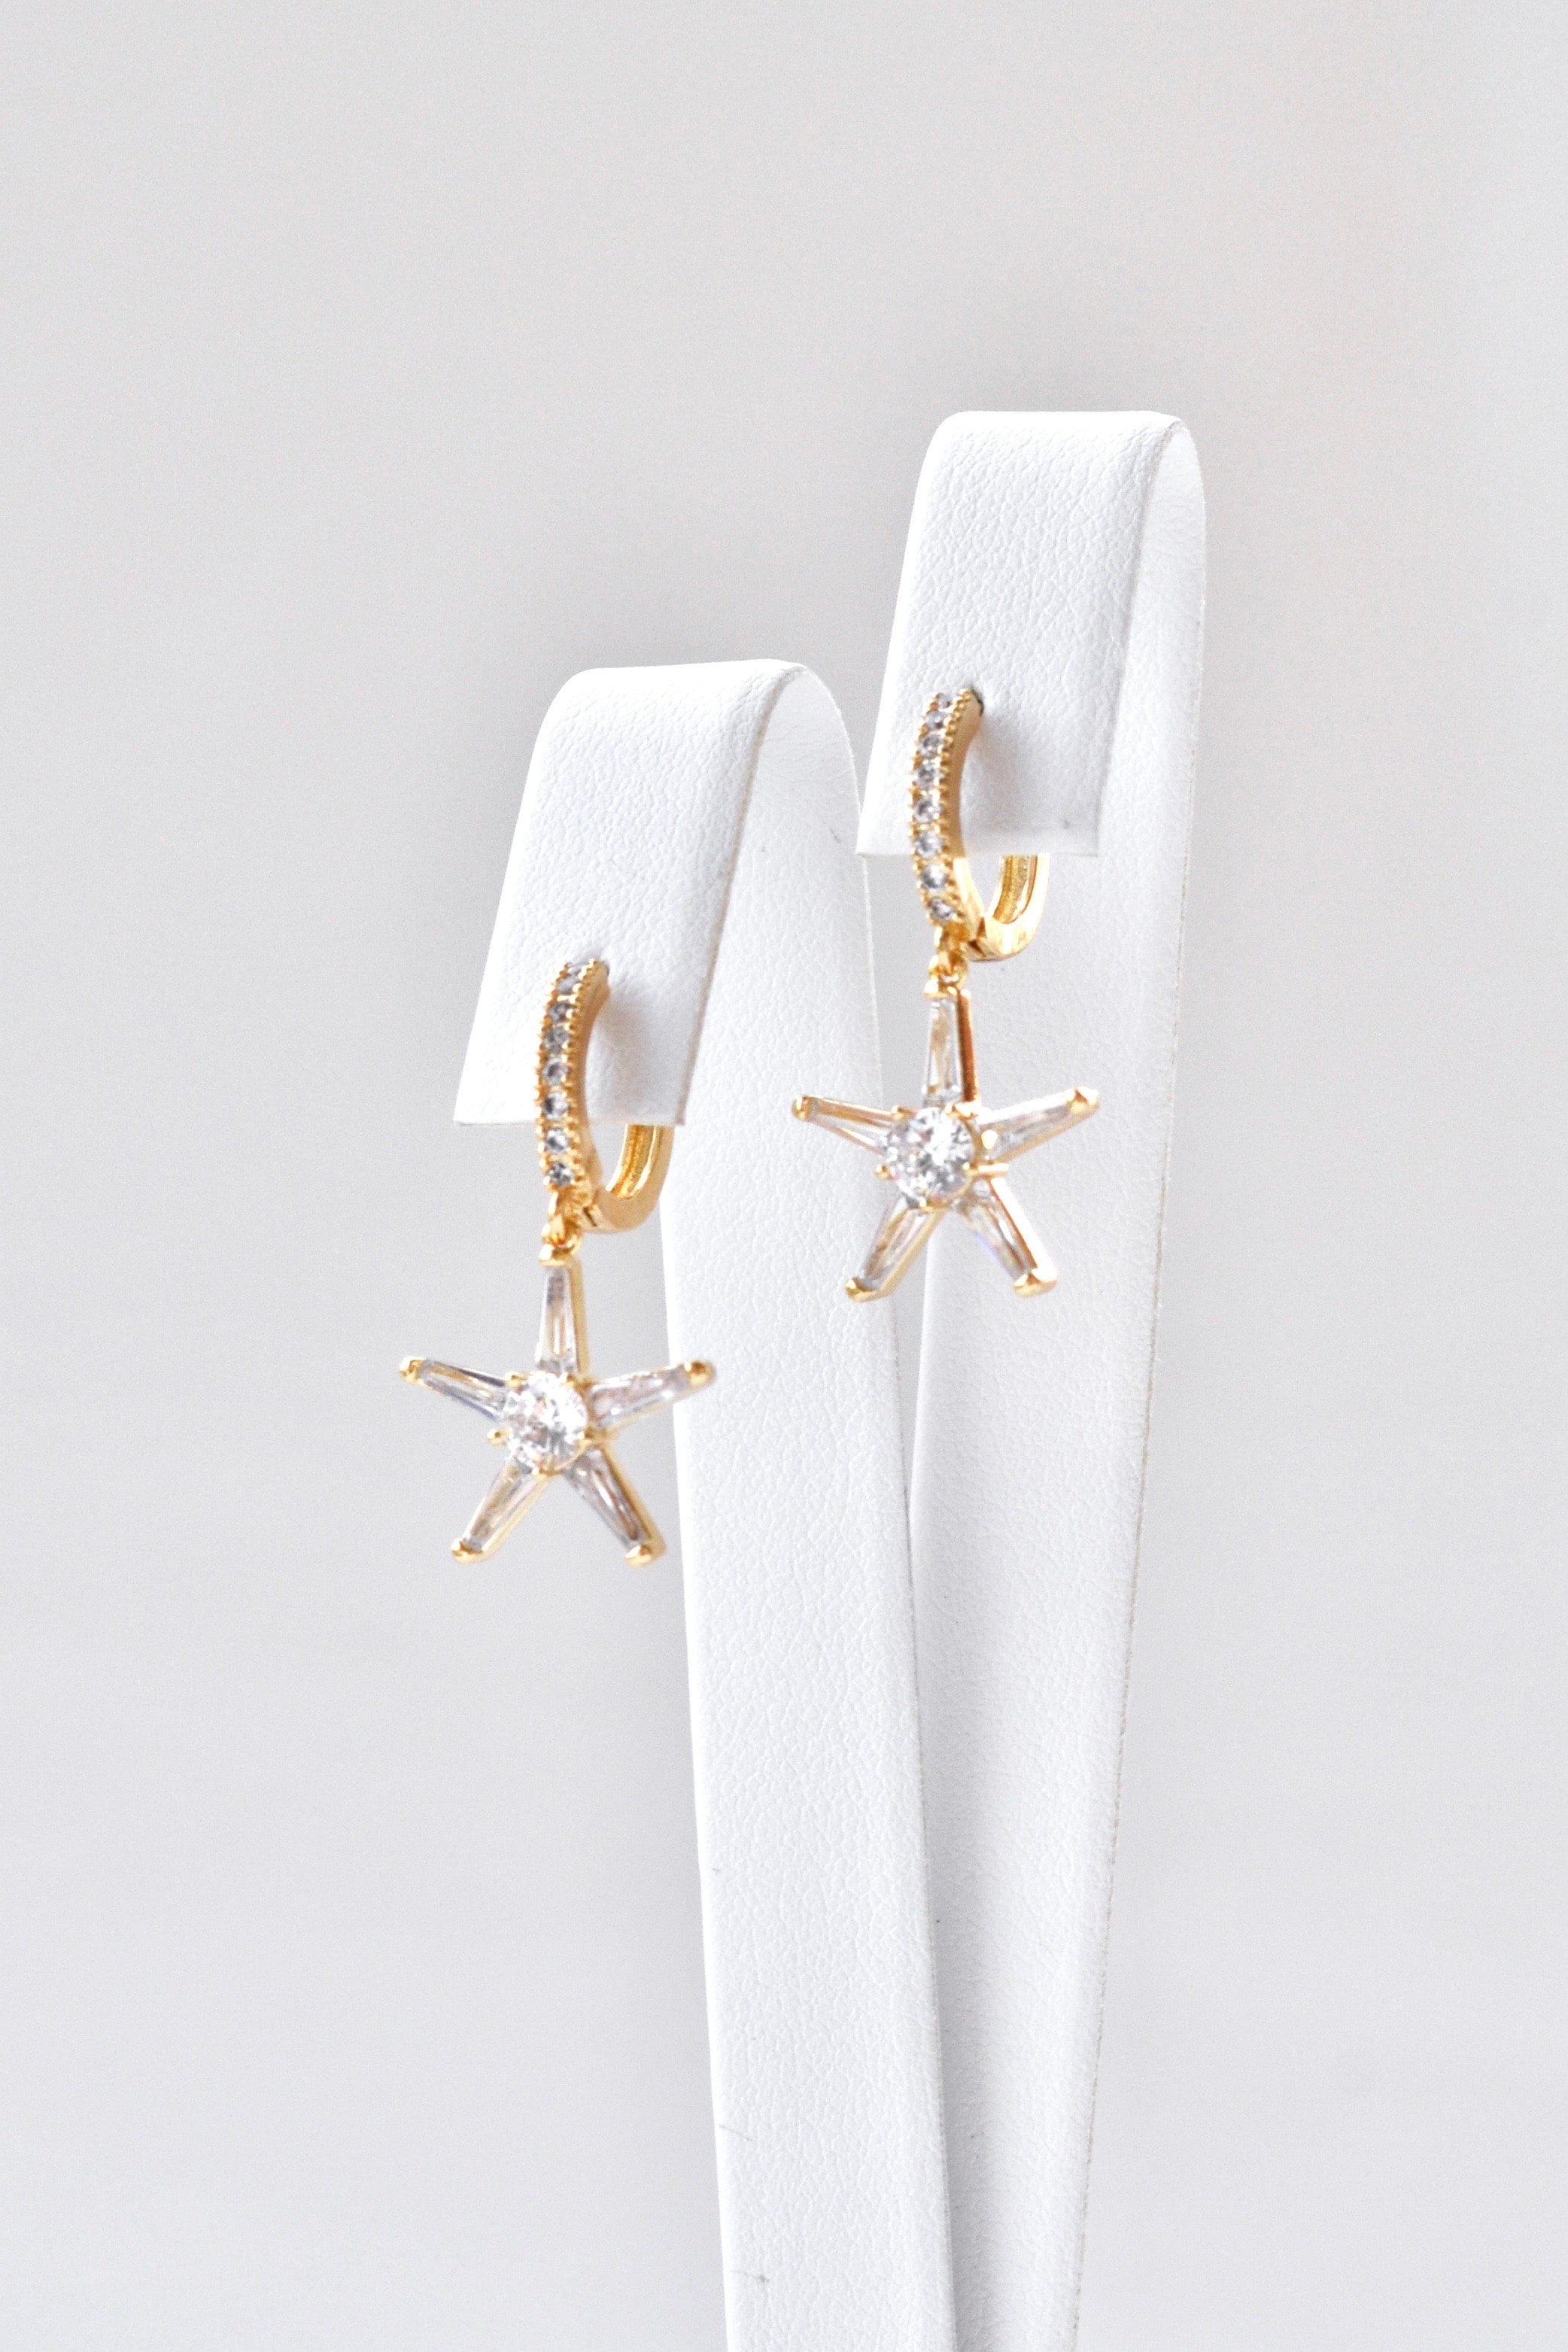 boucles d'oreilles pour invité mariage en forme d'étoile de mer sur un socle pour bijoux